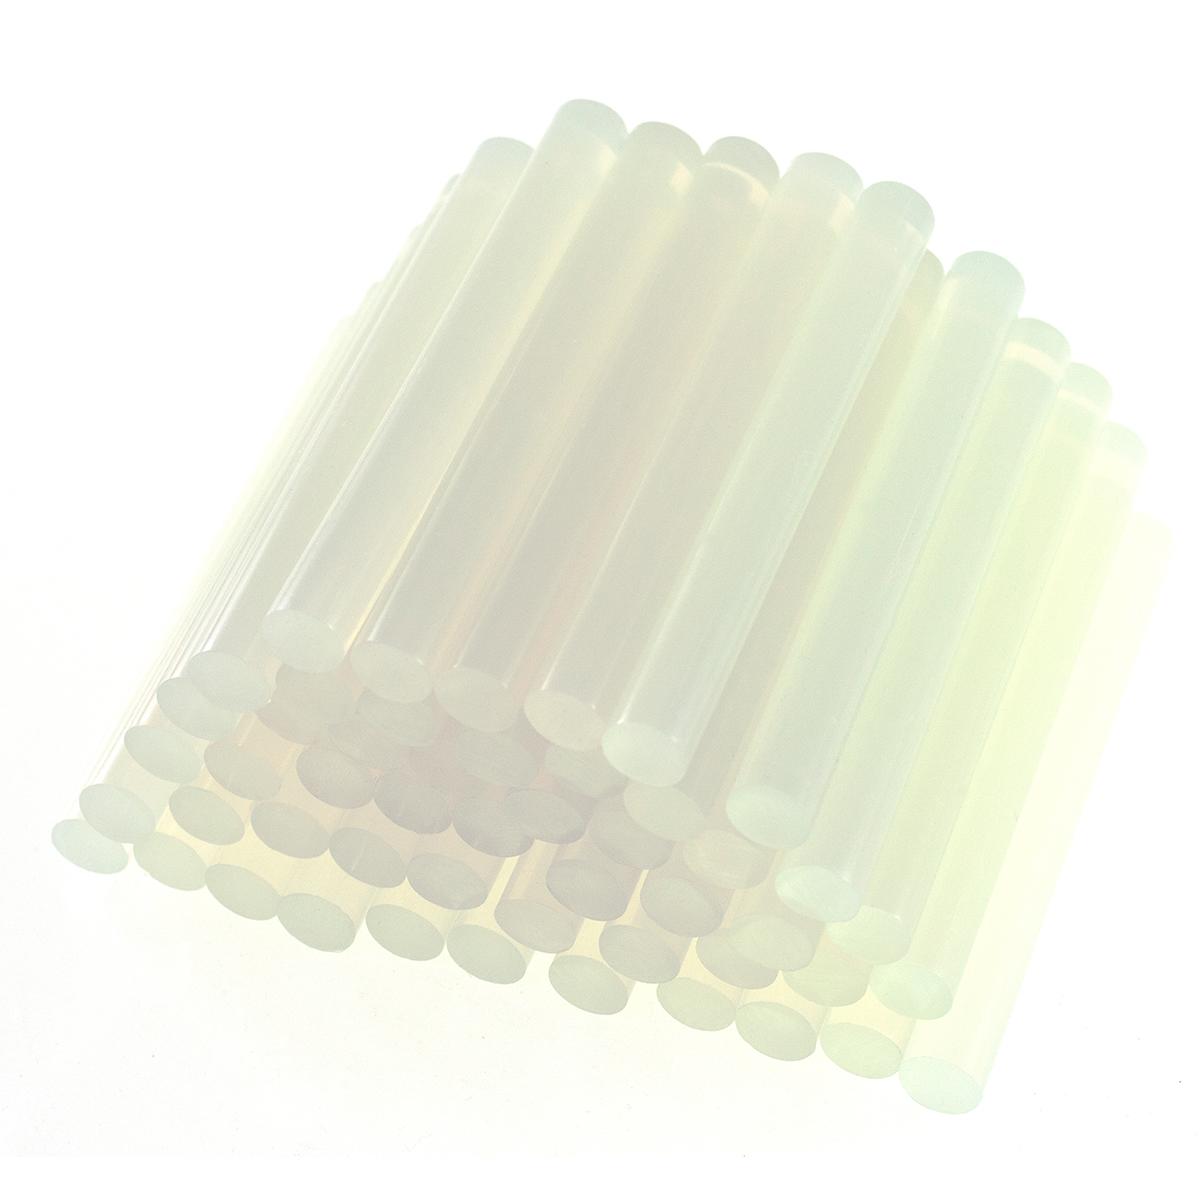 AmTech Hot Melt Glue Sticks 11mm x 100mm  (Pack of 50)